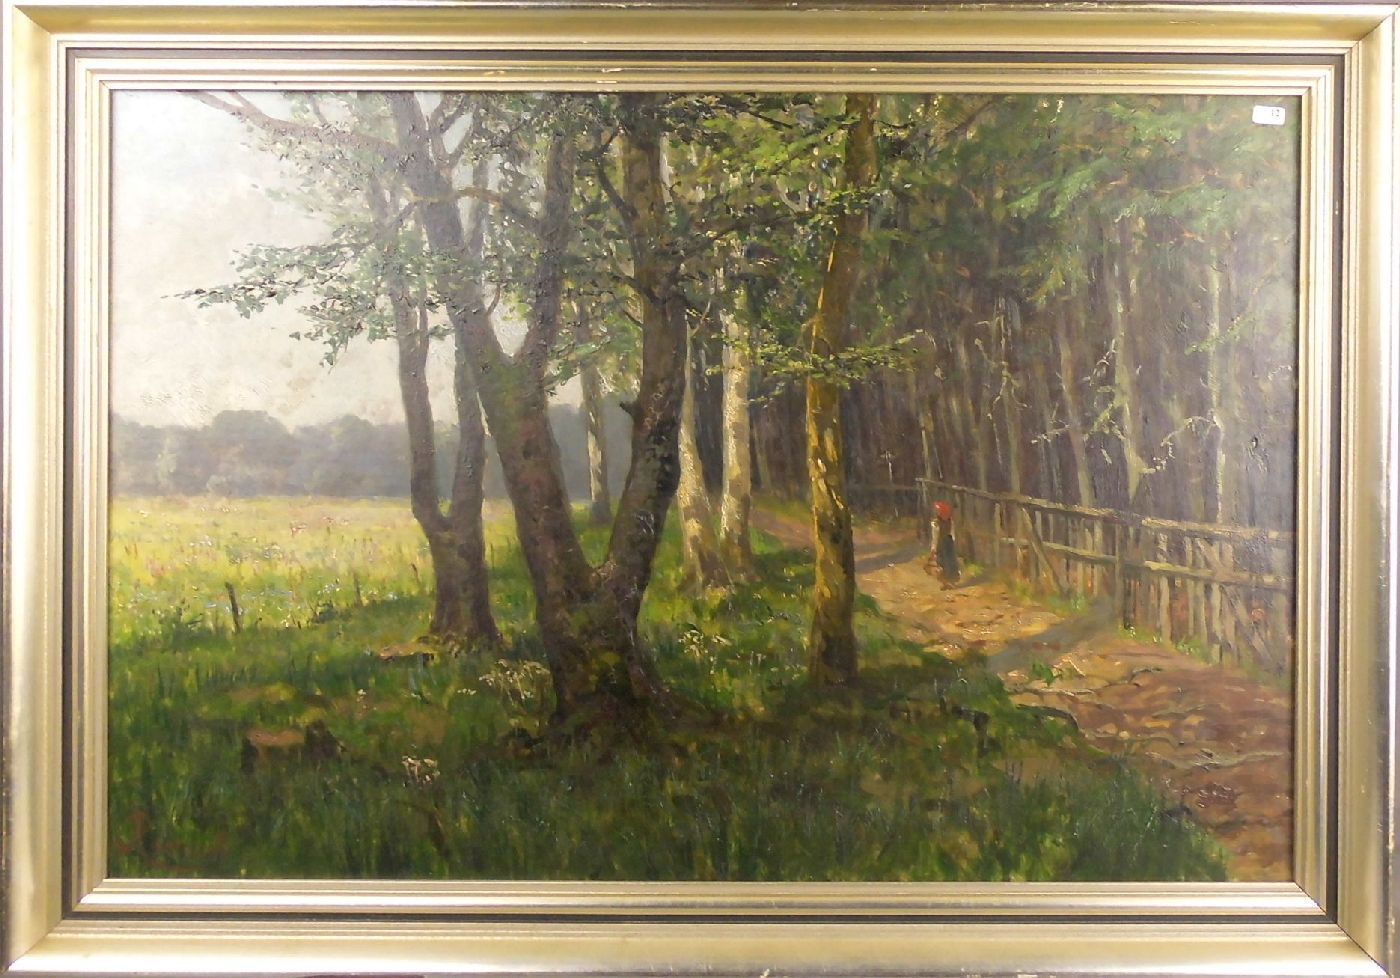 ROUSSET (Jules Rousset ?, 1840-1921), Gemälde: "Sommerlicher Feldweg am Waldrand", Öl auf